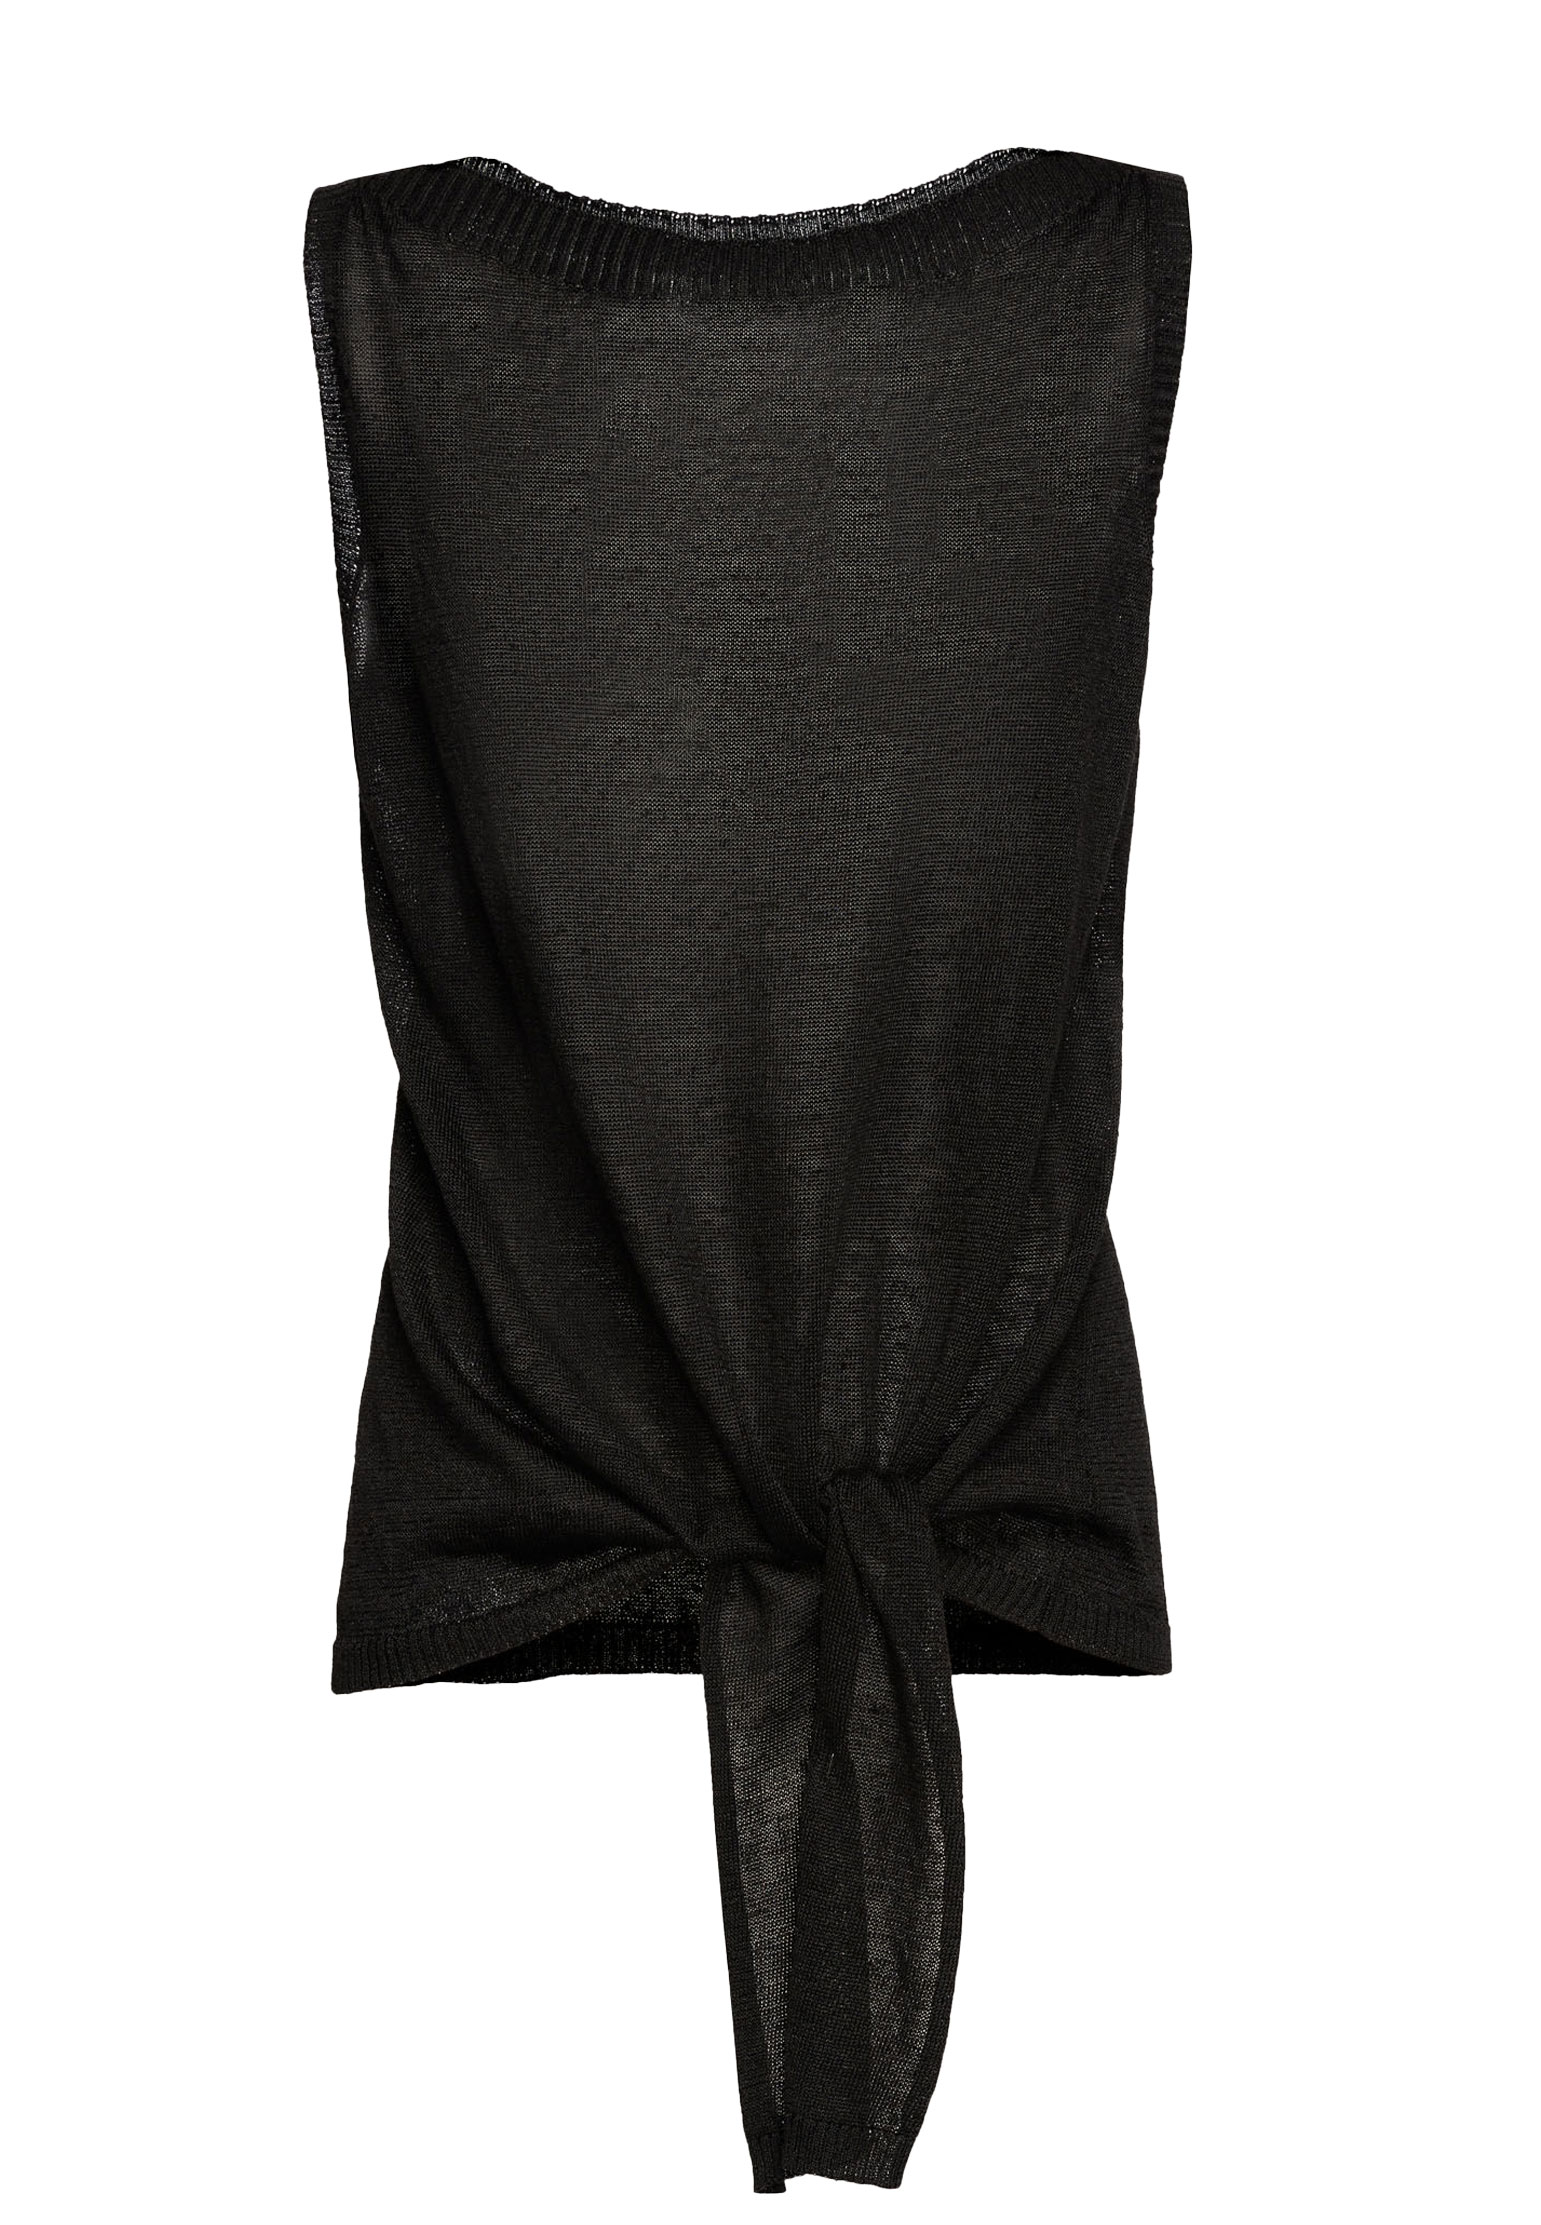 Топ от костюма LUISA SPAGNOLI Черный, размер L